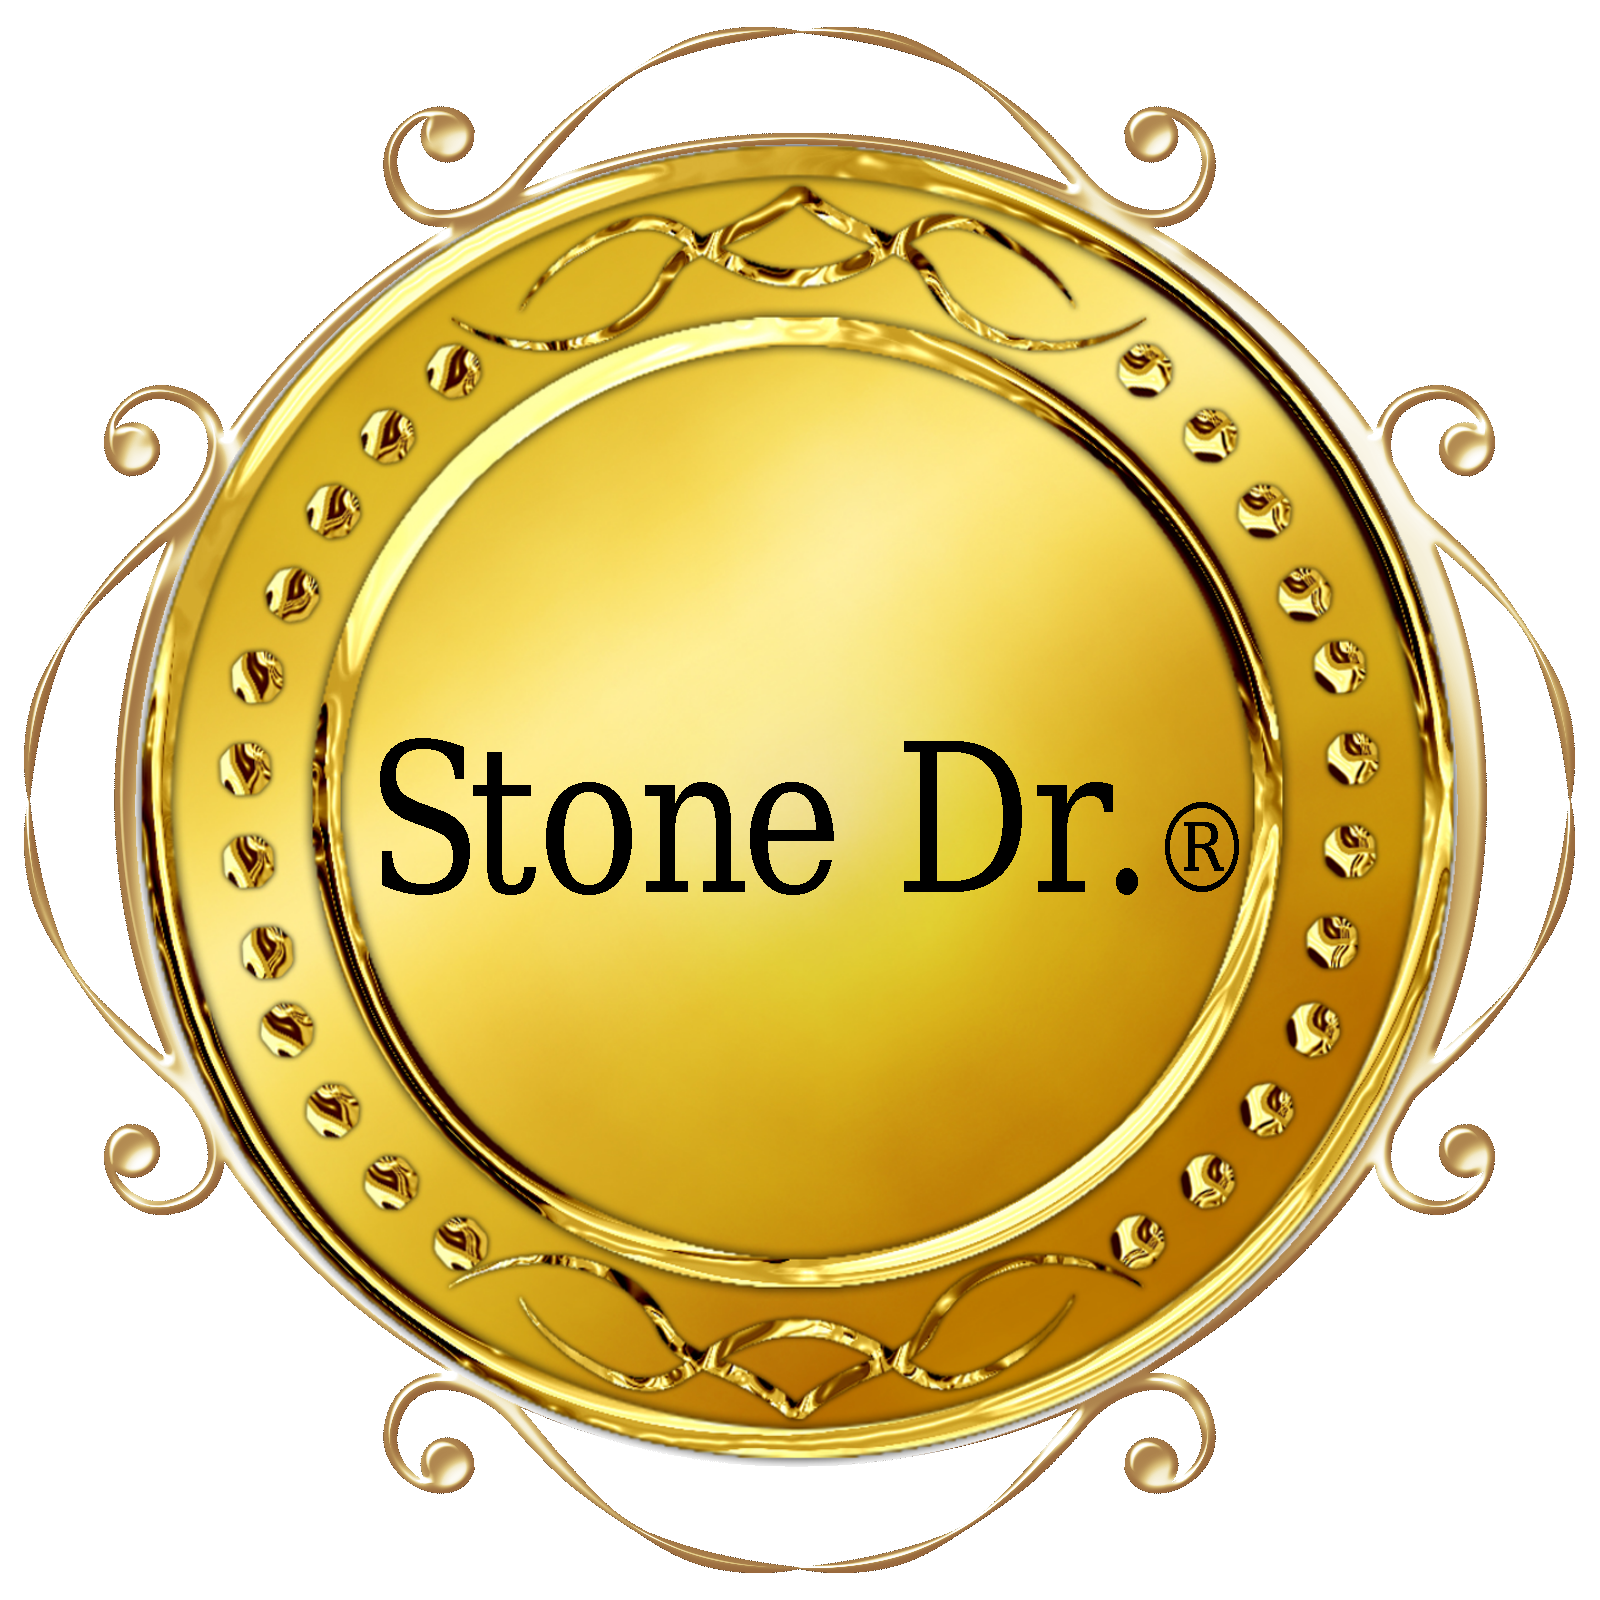 Stone Dr.®になった理由